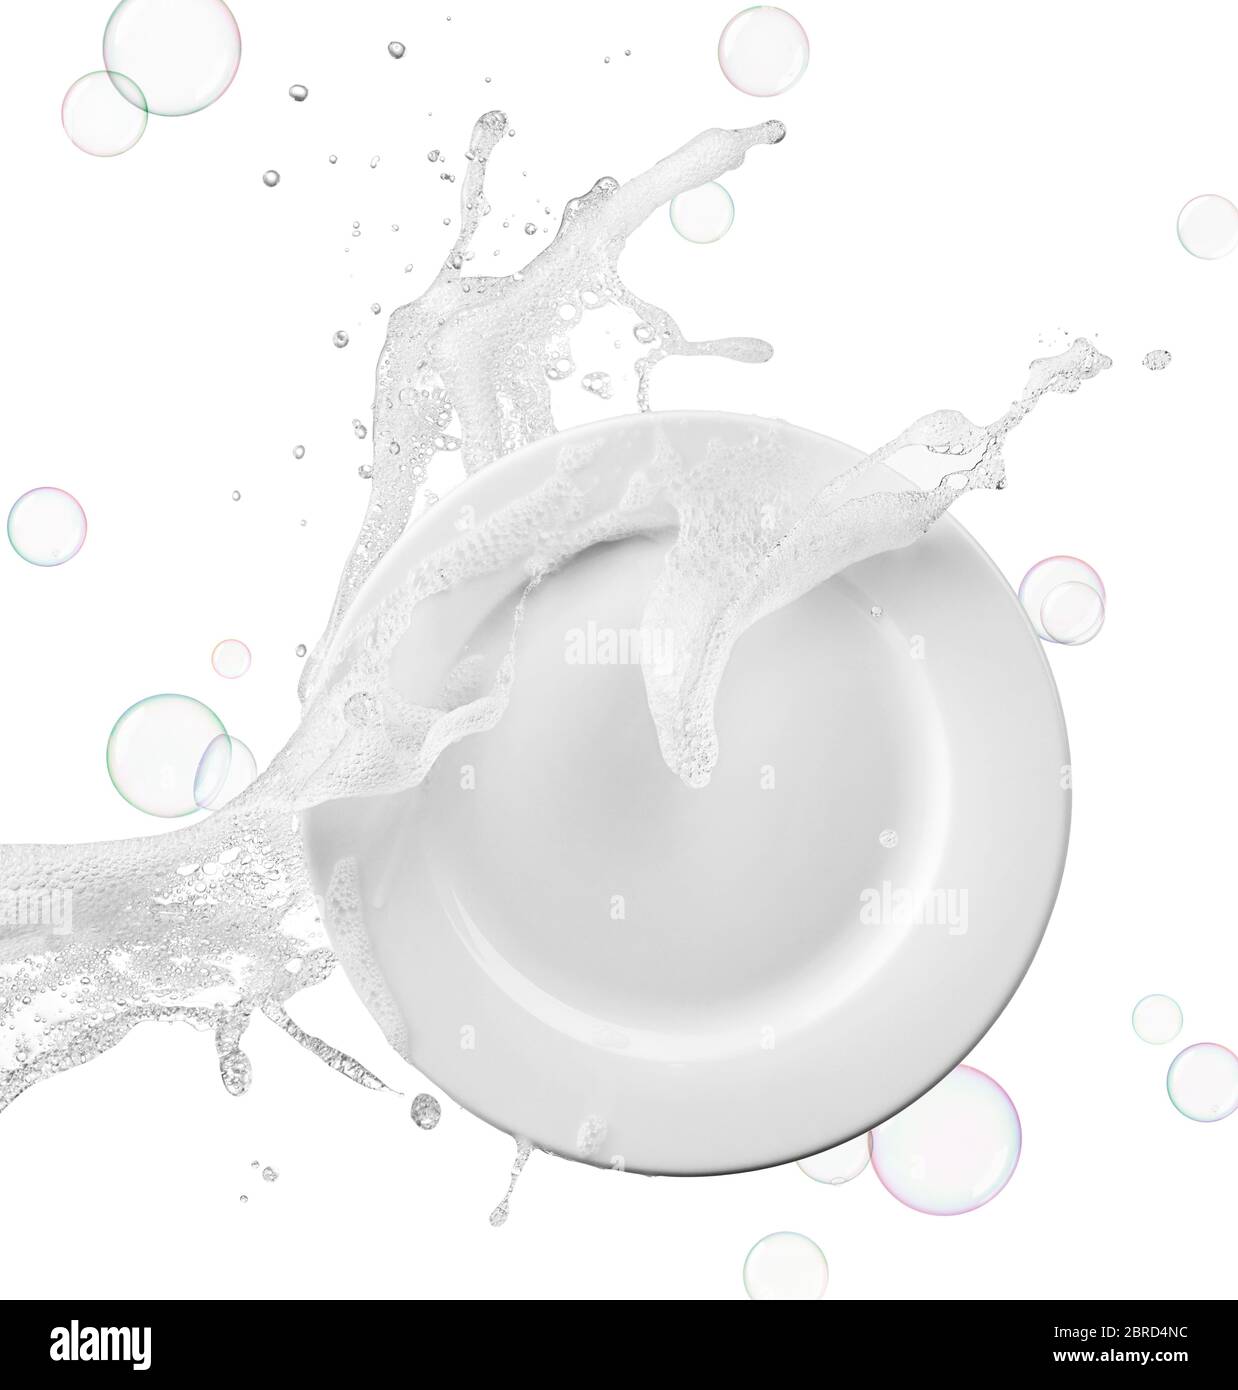 Wasser mit Seife und Seifenblasen auf Platte spritzt Stockfoto